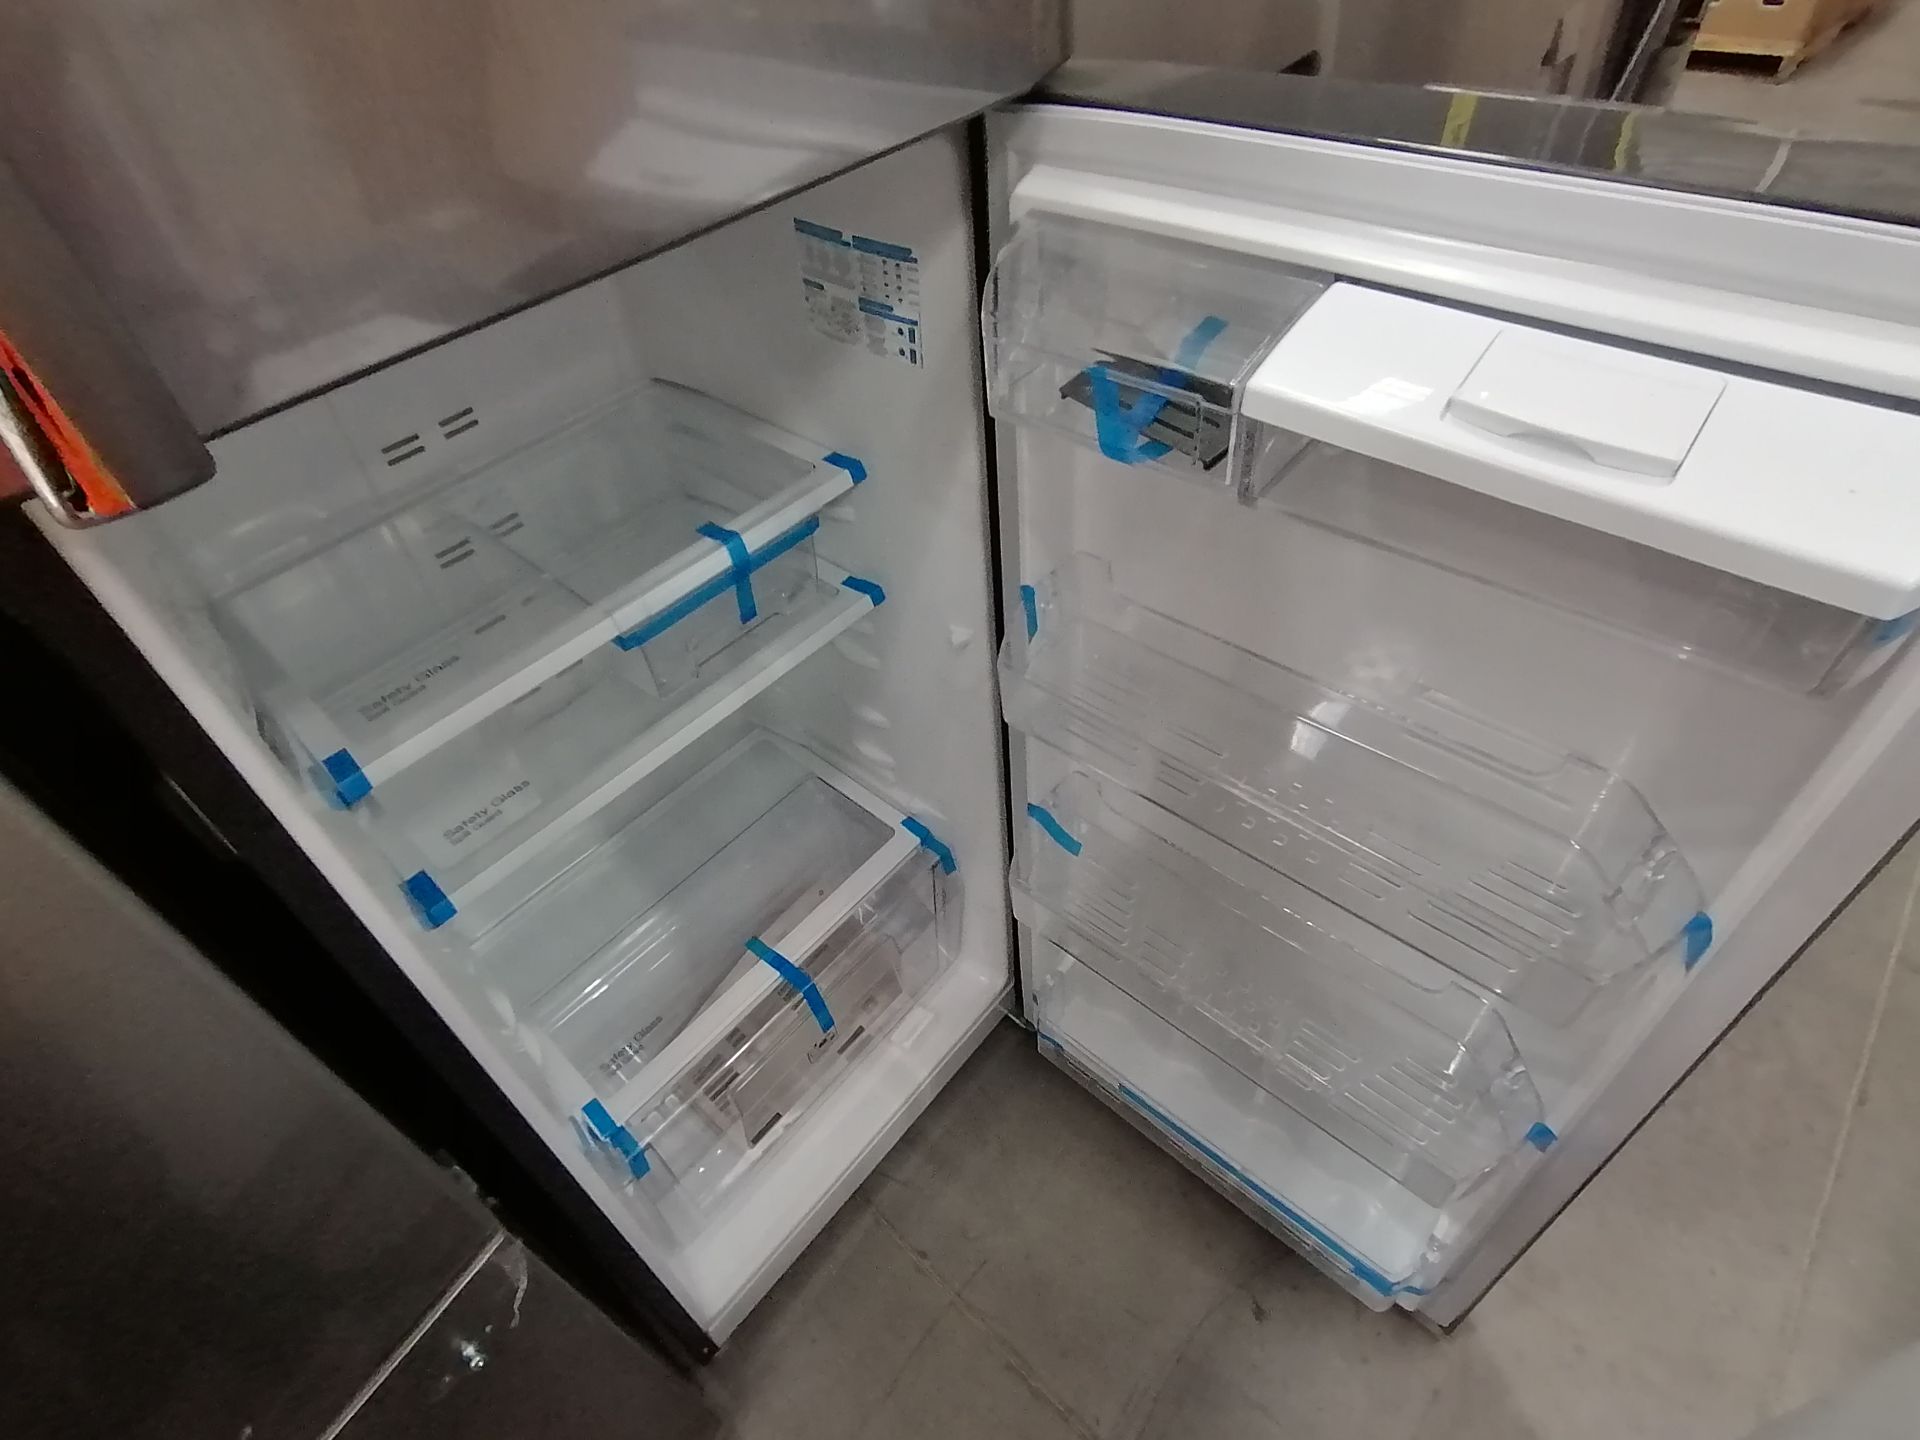 1 Refrigerador Marca Samsung, Modelo rf220fctas8, Serie BBR100057N, Color Gris, Golpeado, Favor de - Image 10 of 16